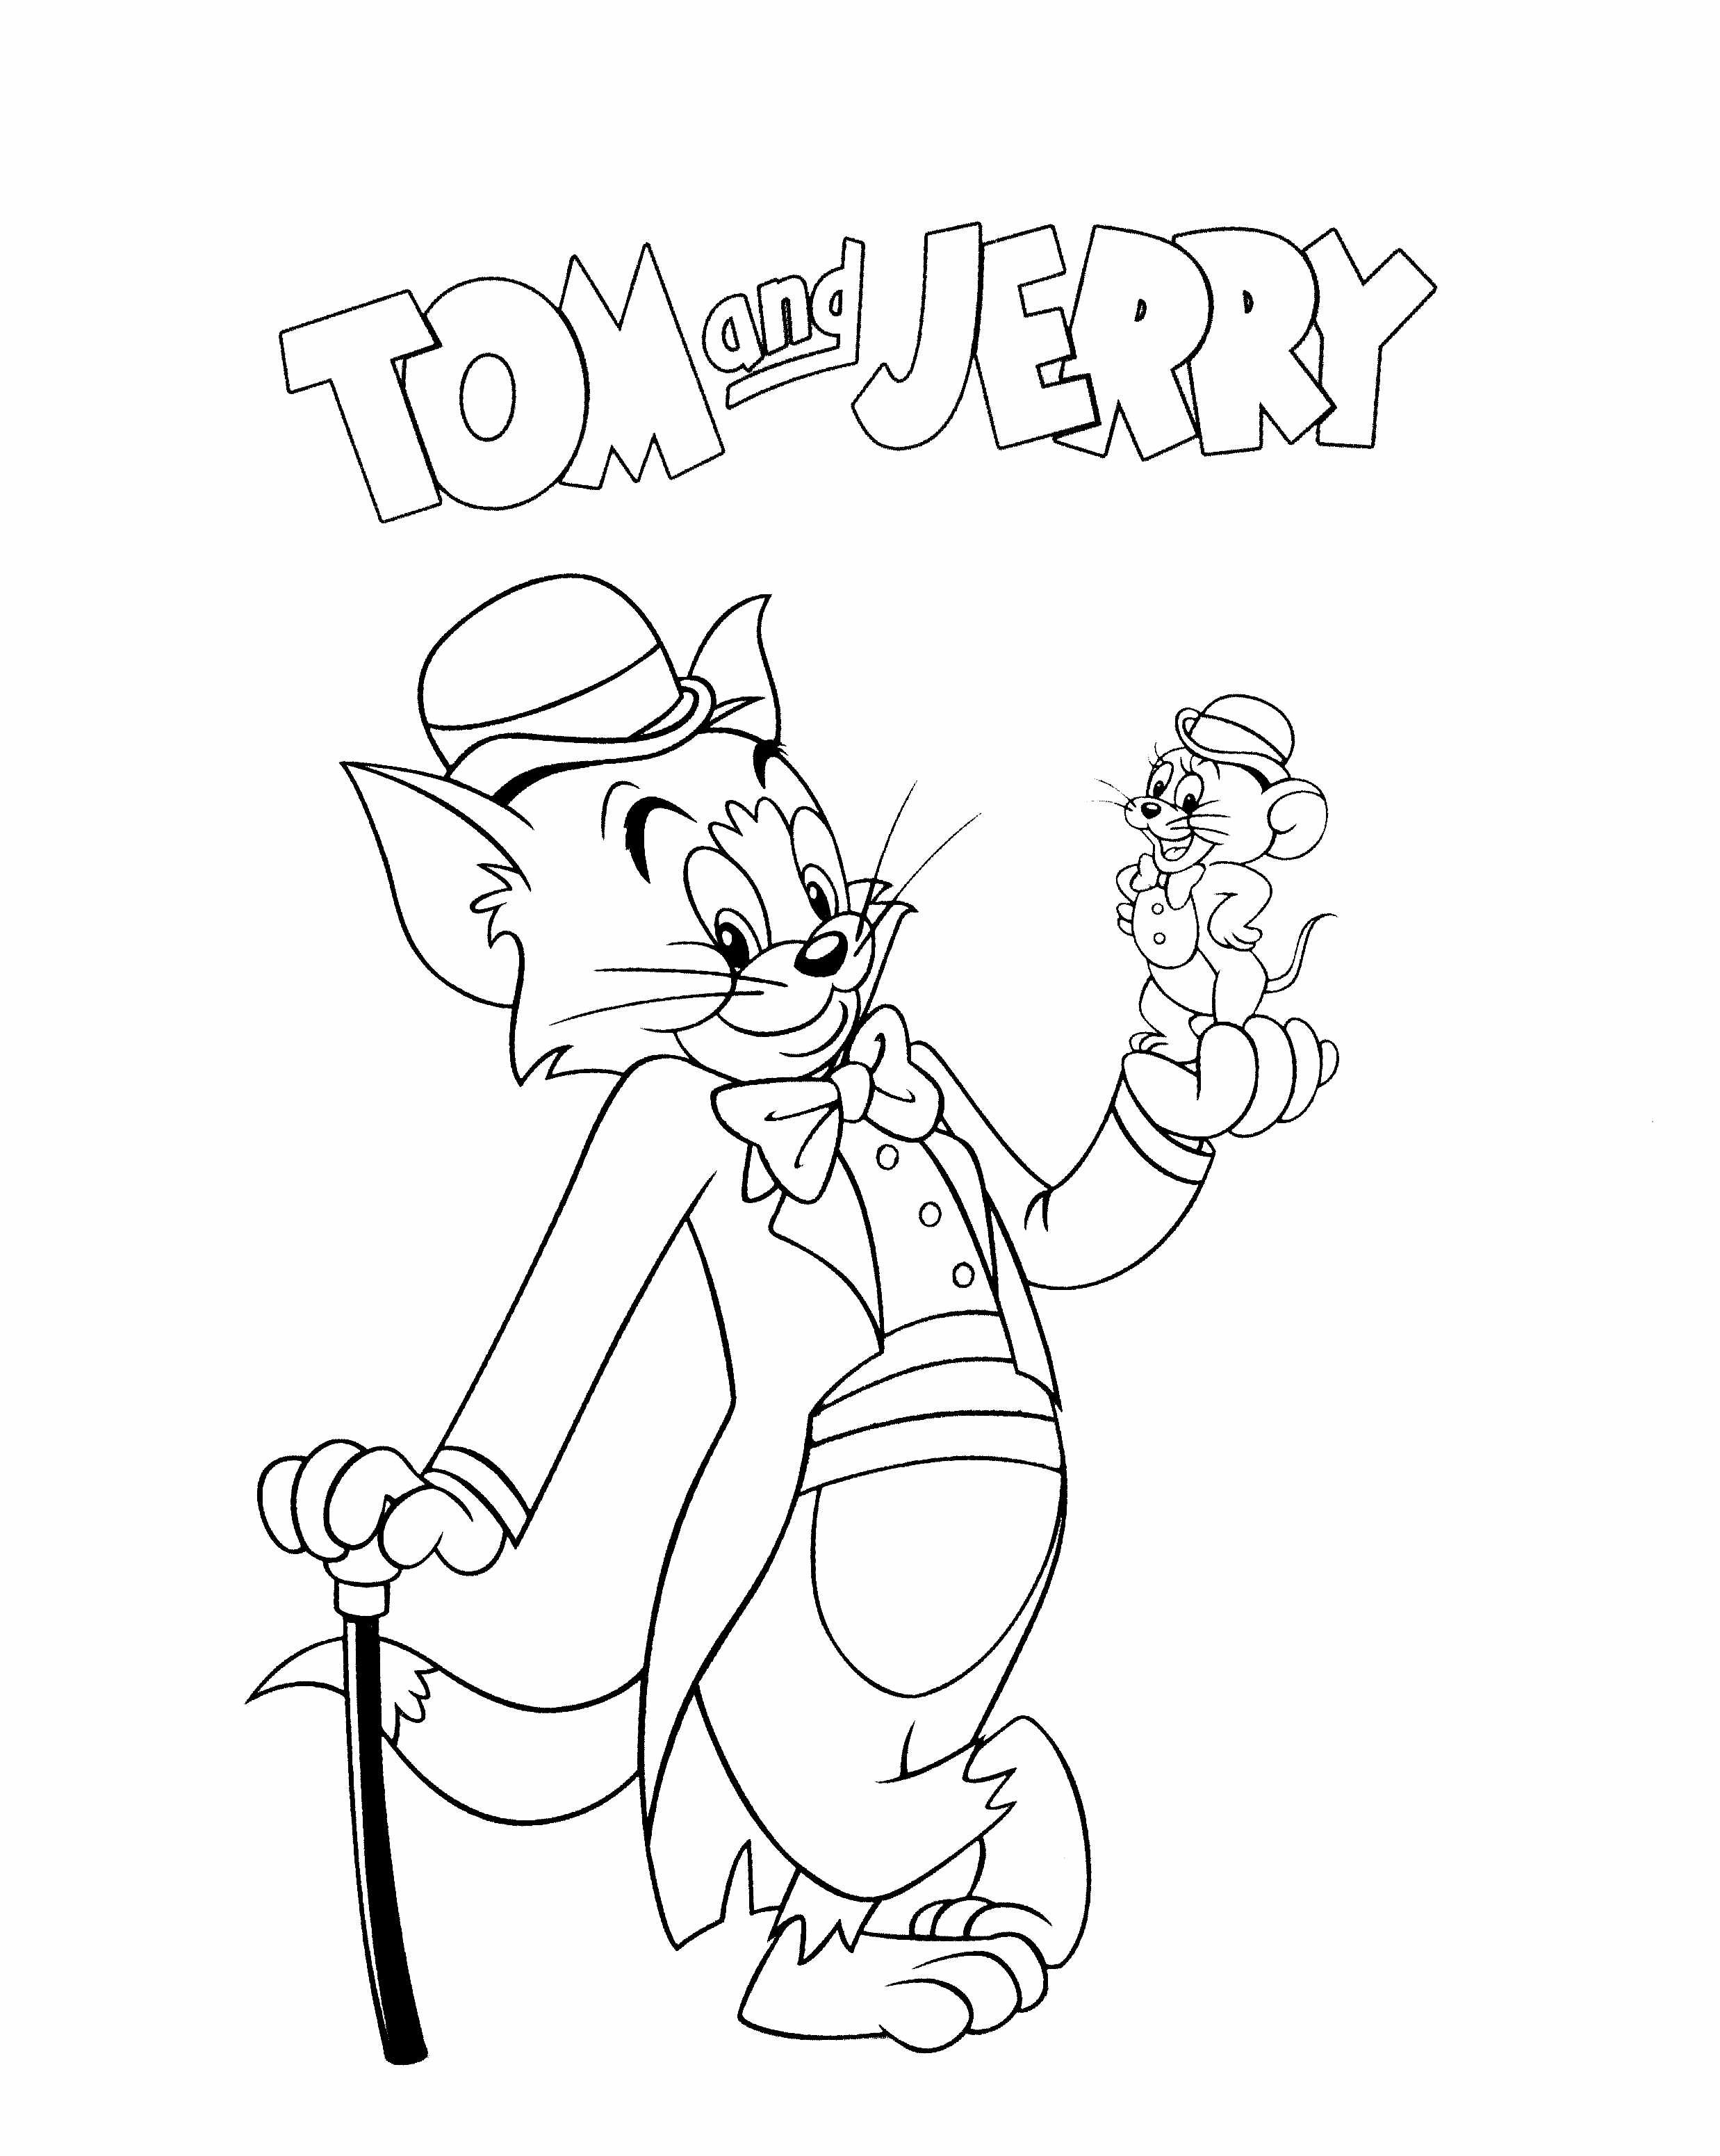 Tom & Jerry muito elegante e amigável nesta página de coloração